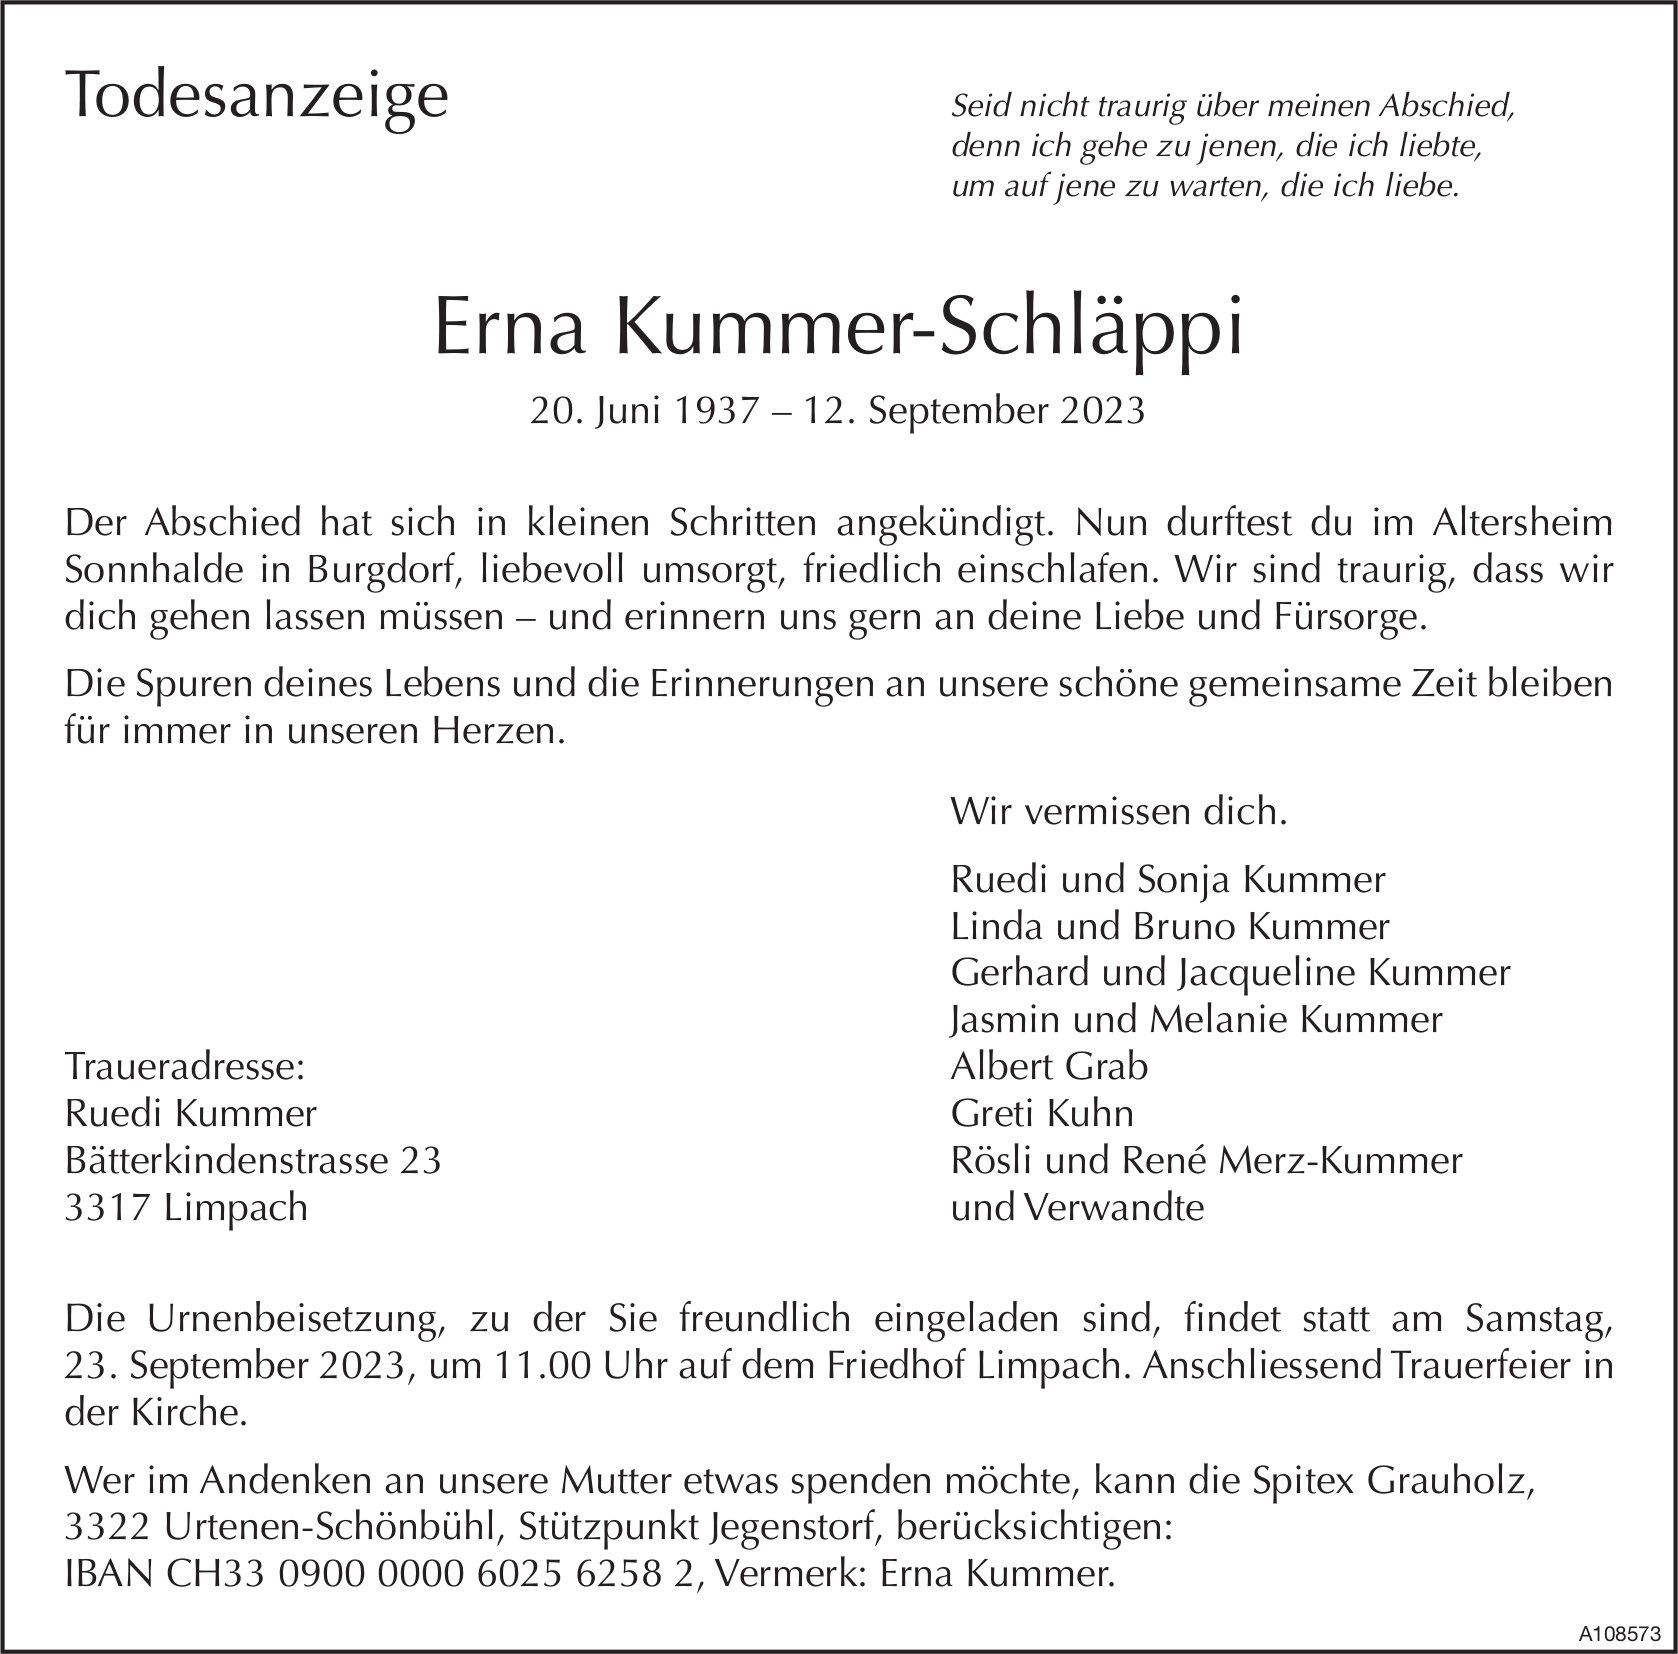 Erna Kummer-Schläppi, September 2023 / TA